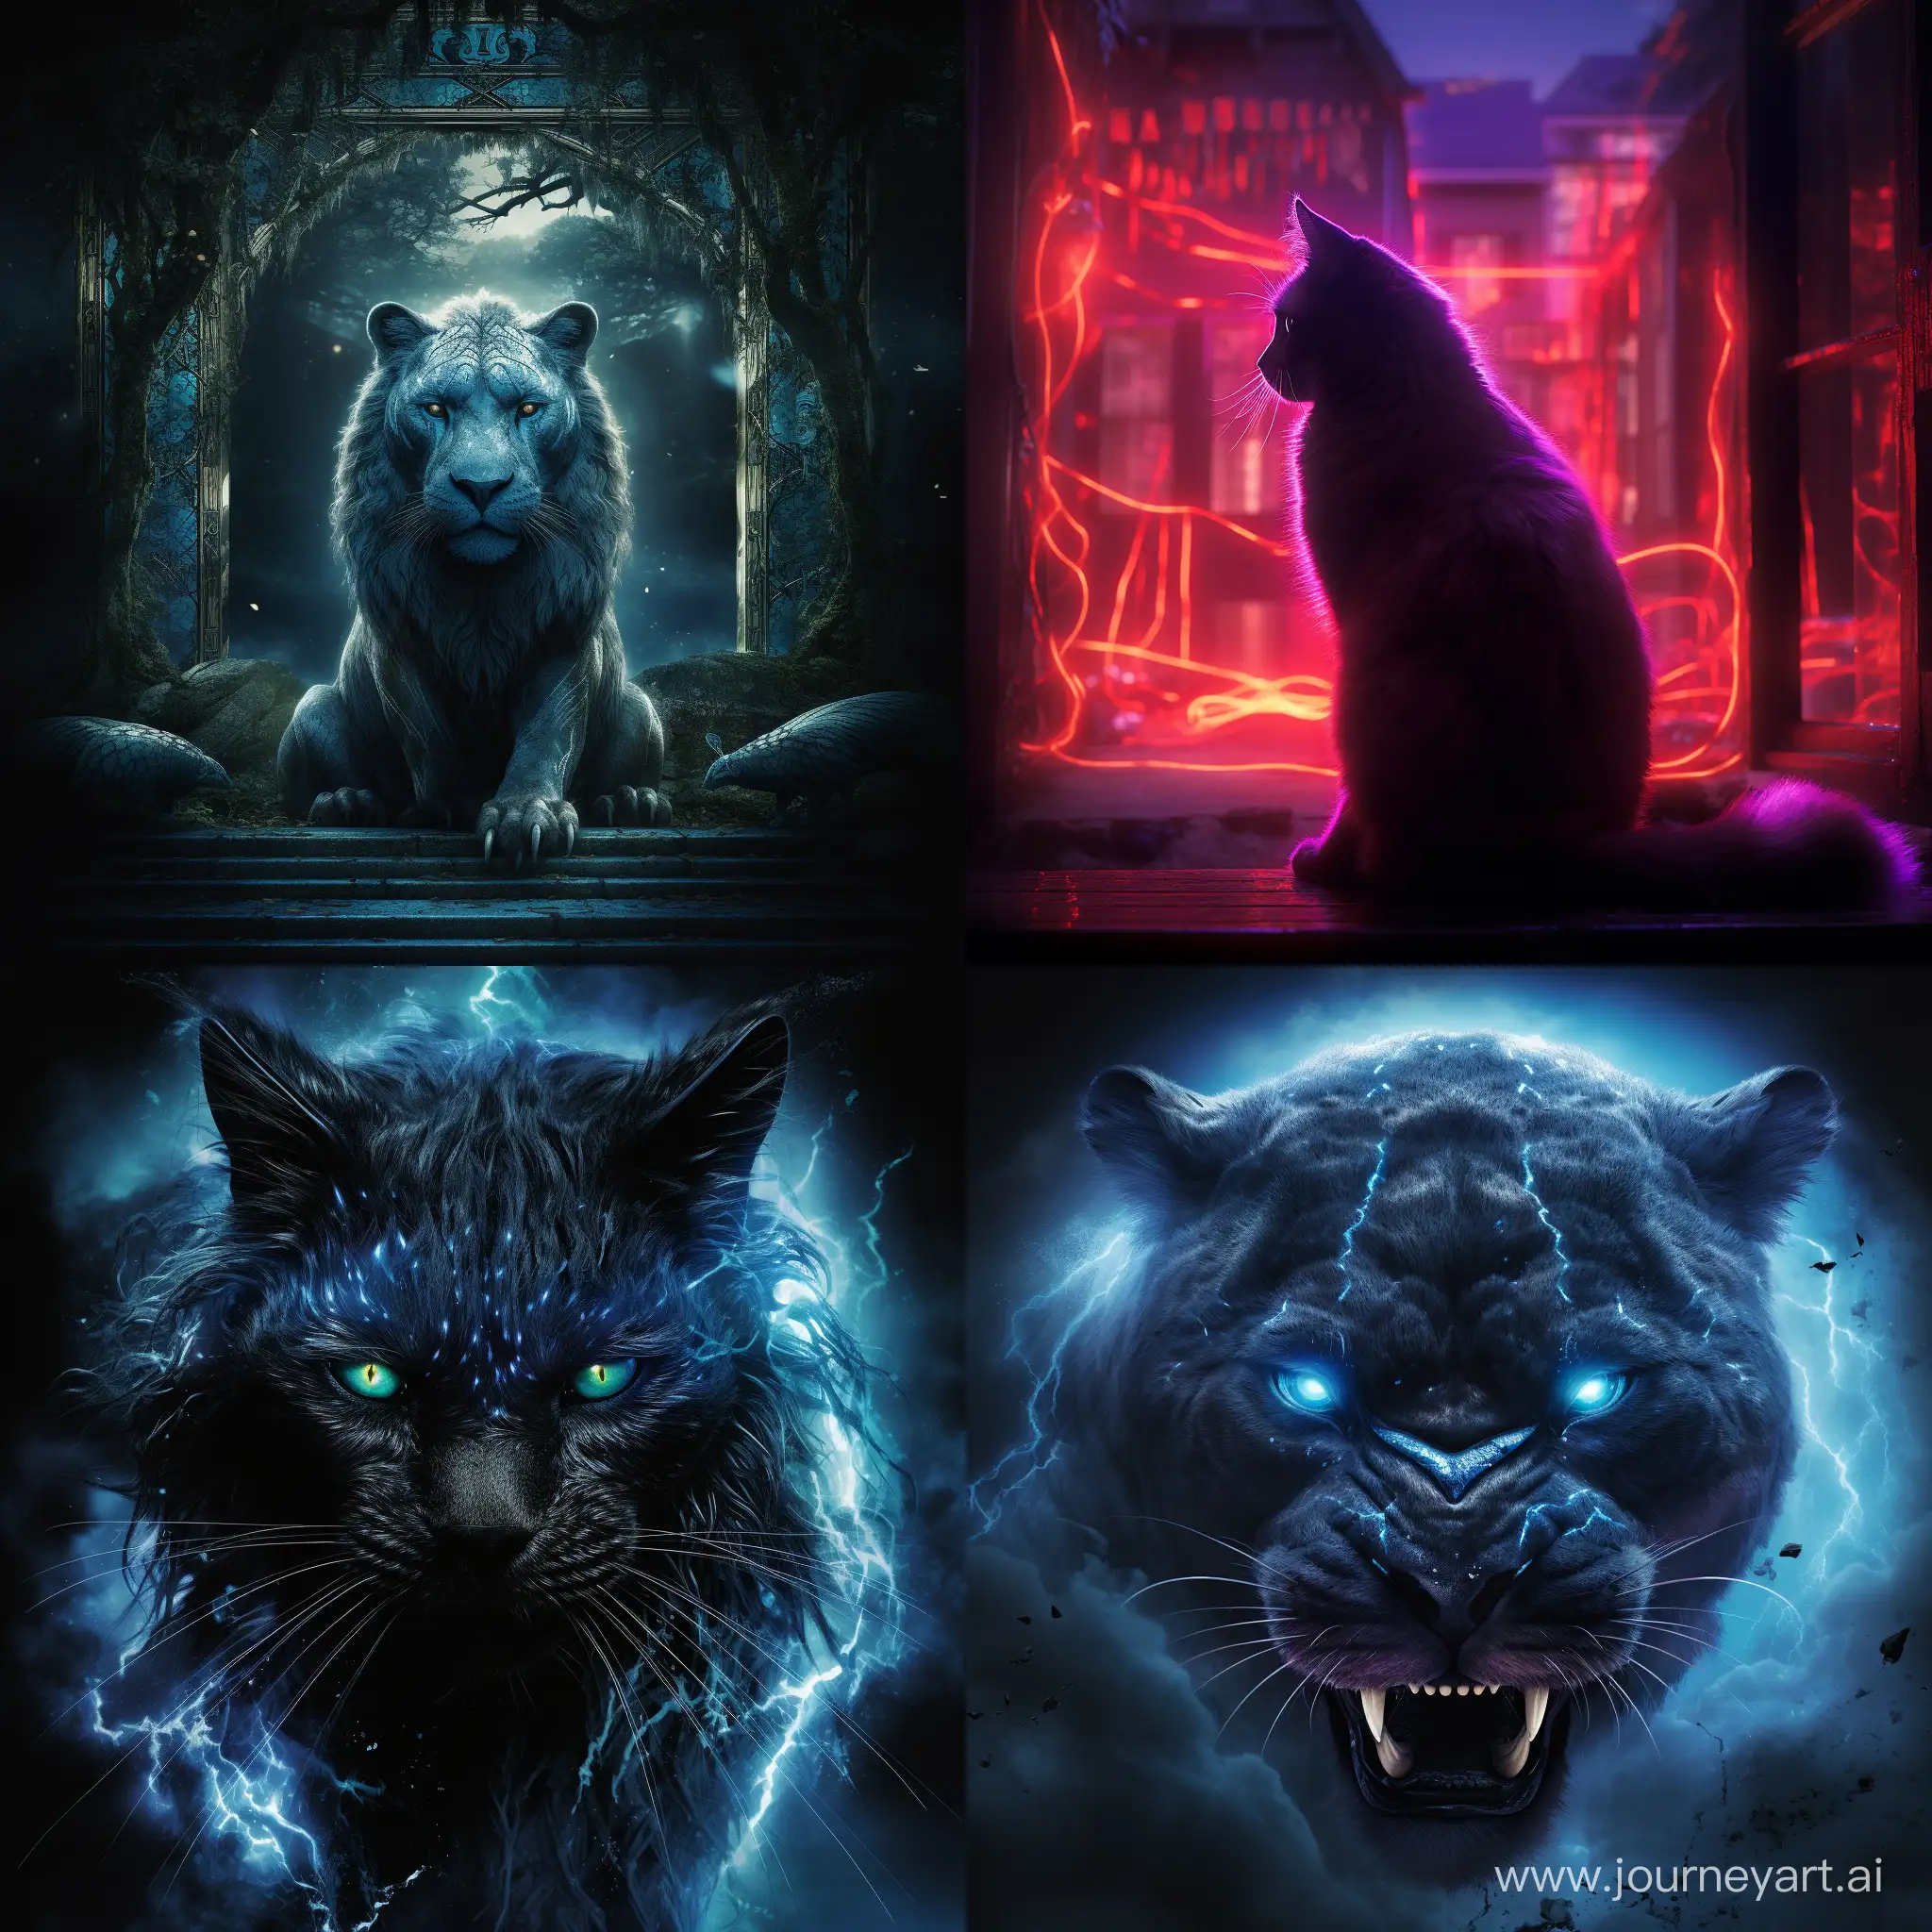 movie poster fantasy cinematic lighting, ::1.2, голубая кошка во весь рост с черными узорами на фоне окна, полный рост, свет проникает через окна отбрасывая блики на кошку, --chaos 20